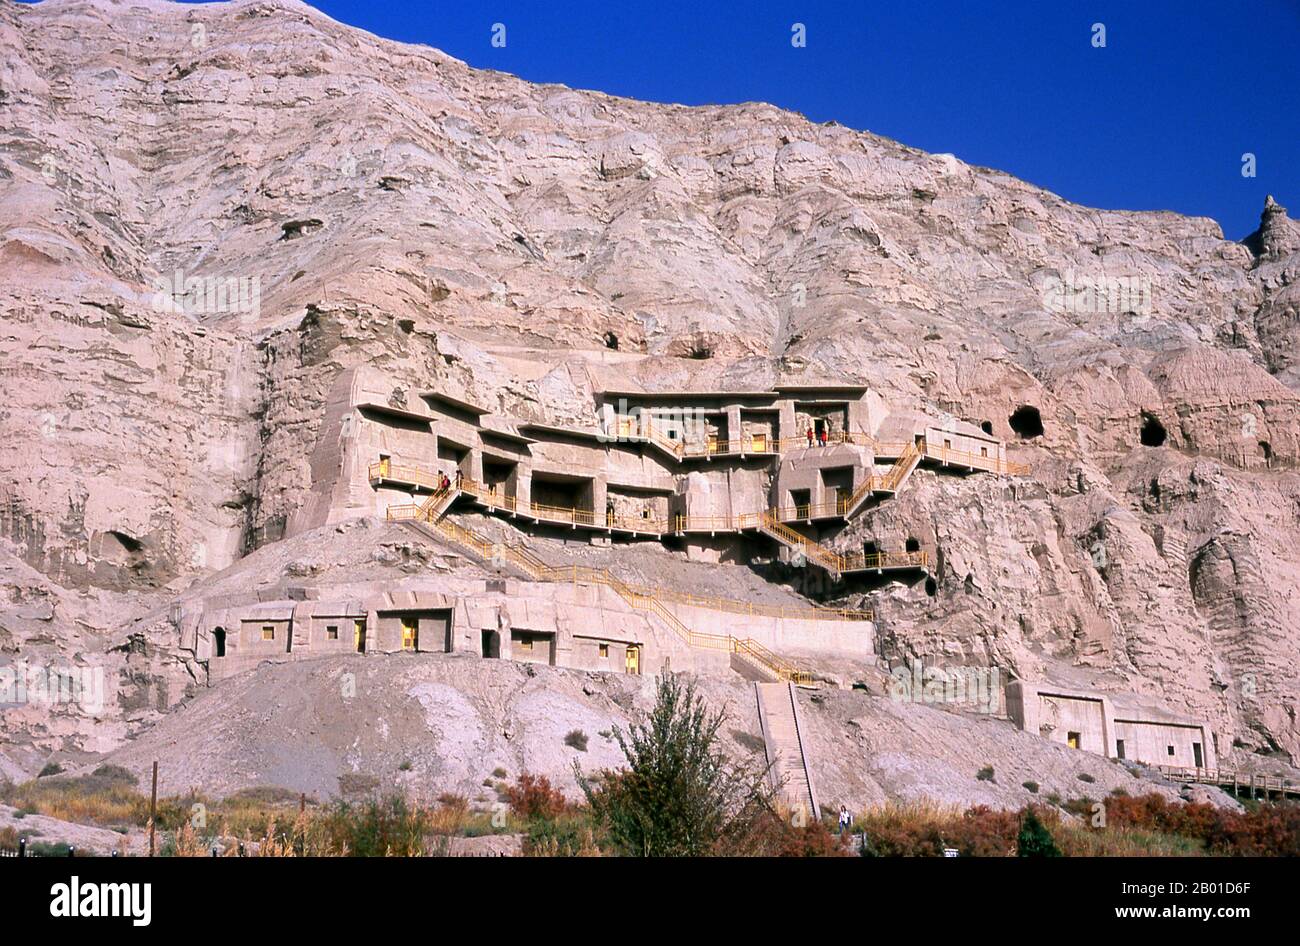 Chine: Kizil mille grottes de Bouddha, Kuqa, province de Xinjiang. Les grottes de Kizil (Qizil Ming Oy; Kizil Cave of a Thousand Buddhas) sont 236 grottes bouddhistes coupées par roche situées près du canton de Kizil dans le Xinjiang. Le site est situé sur la rive nord de la rivière Muzat à 75 kilomètres par la route au nord-ouest de Kucha (Kuqa). La région était un centre commercial de la route de la soie. On dit que les grottes sont le plus ancien complexe de grottes bouddhistes majeur du Xinjiang, avec un développement entre les 3rd et 8th siècles. Bien que le site ait été endommagé et pillé, il reste au moins 1000 mètres carrés de peintures murales. Banque D'Images